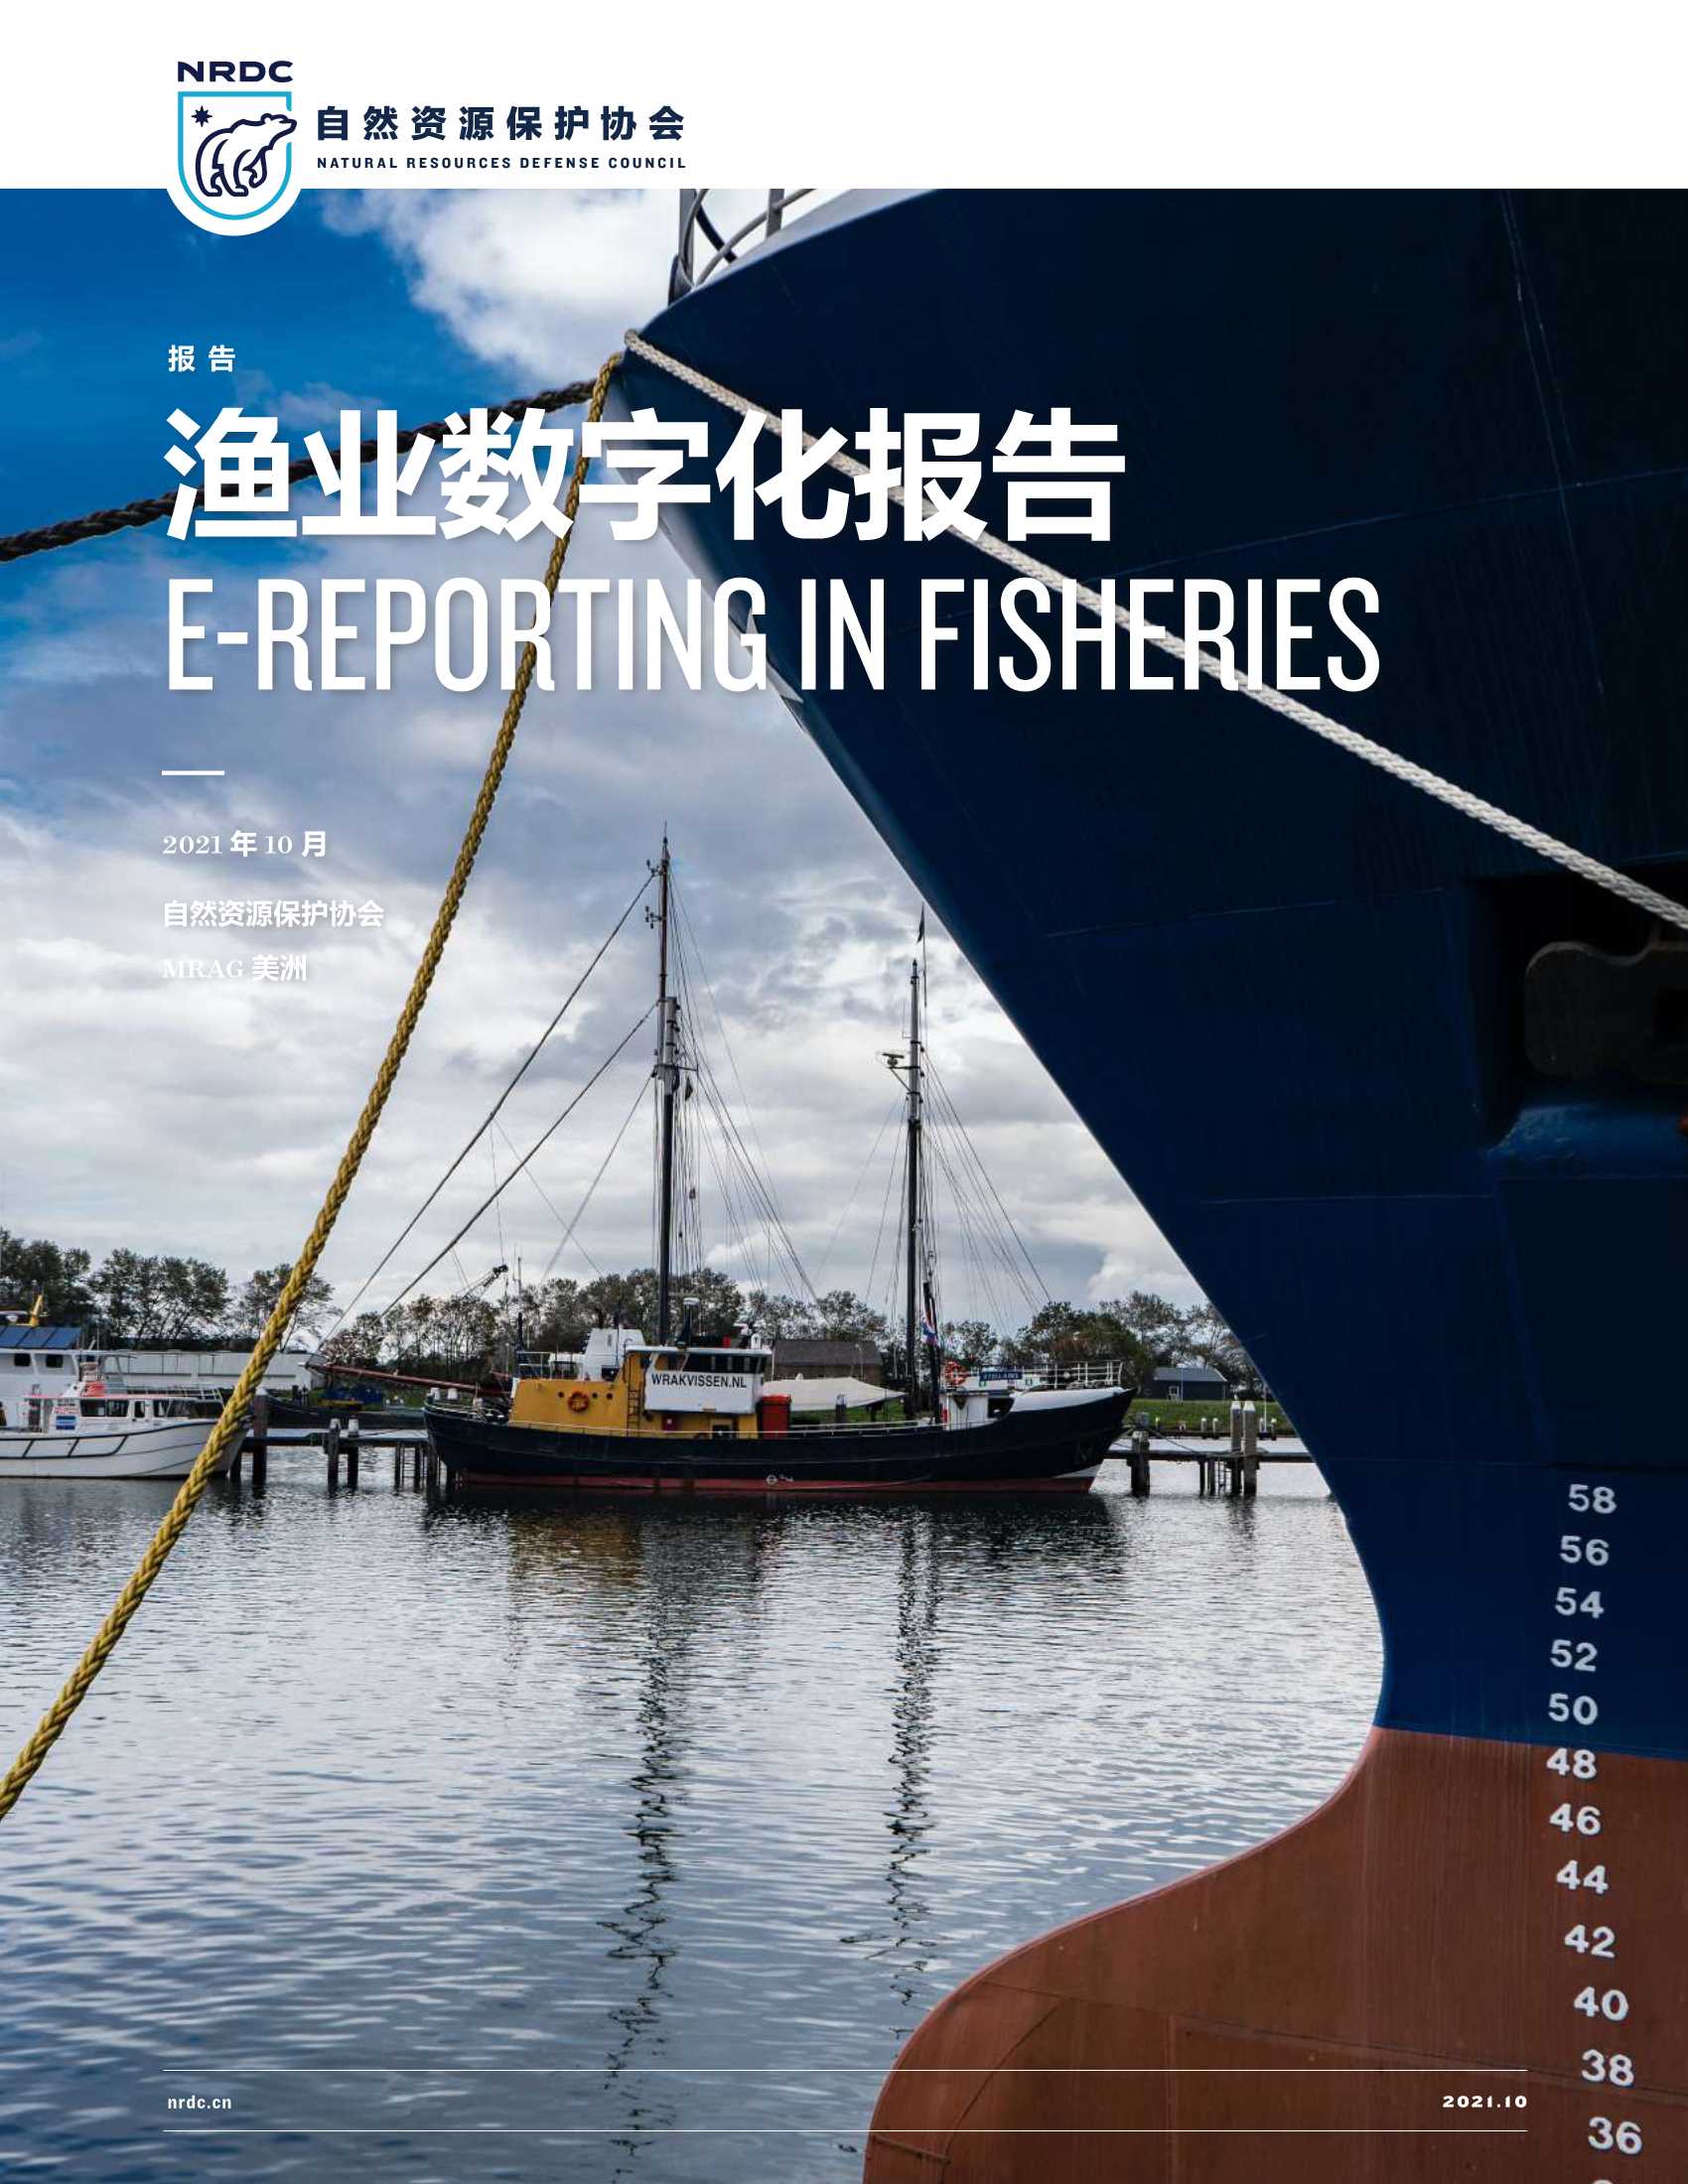 自然资源保护协会-渔业数字化报告-2021.11-52页